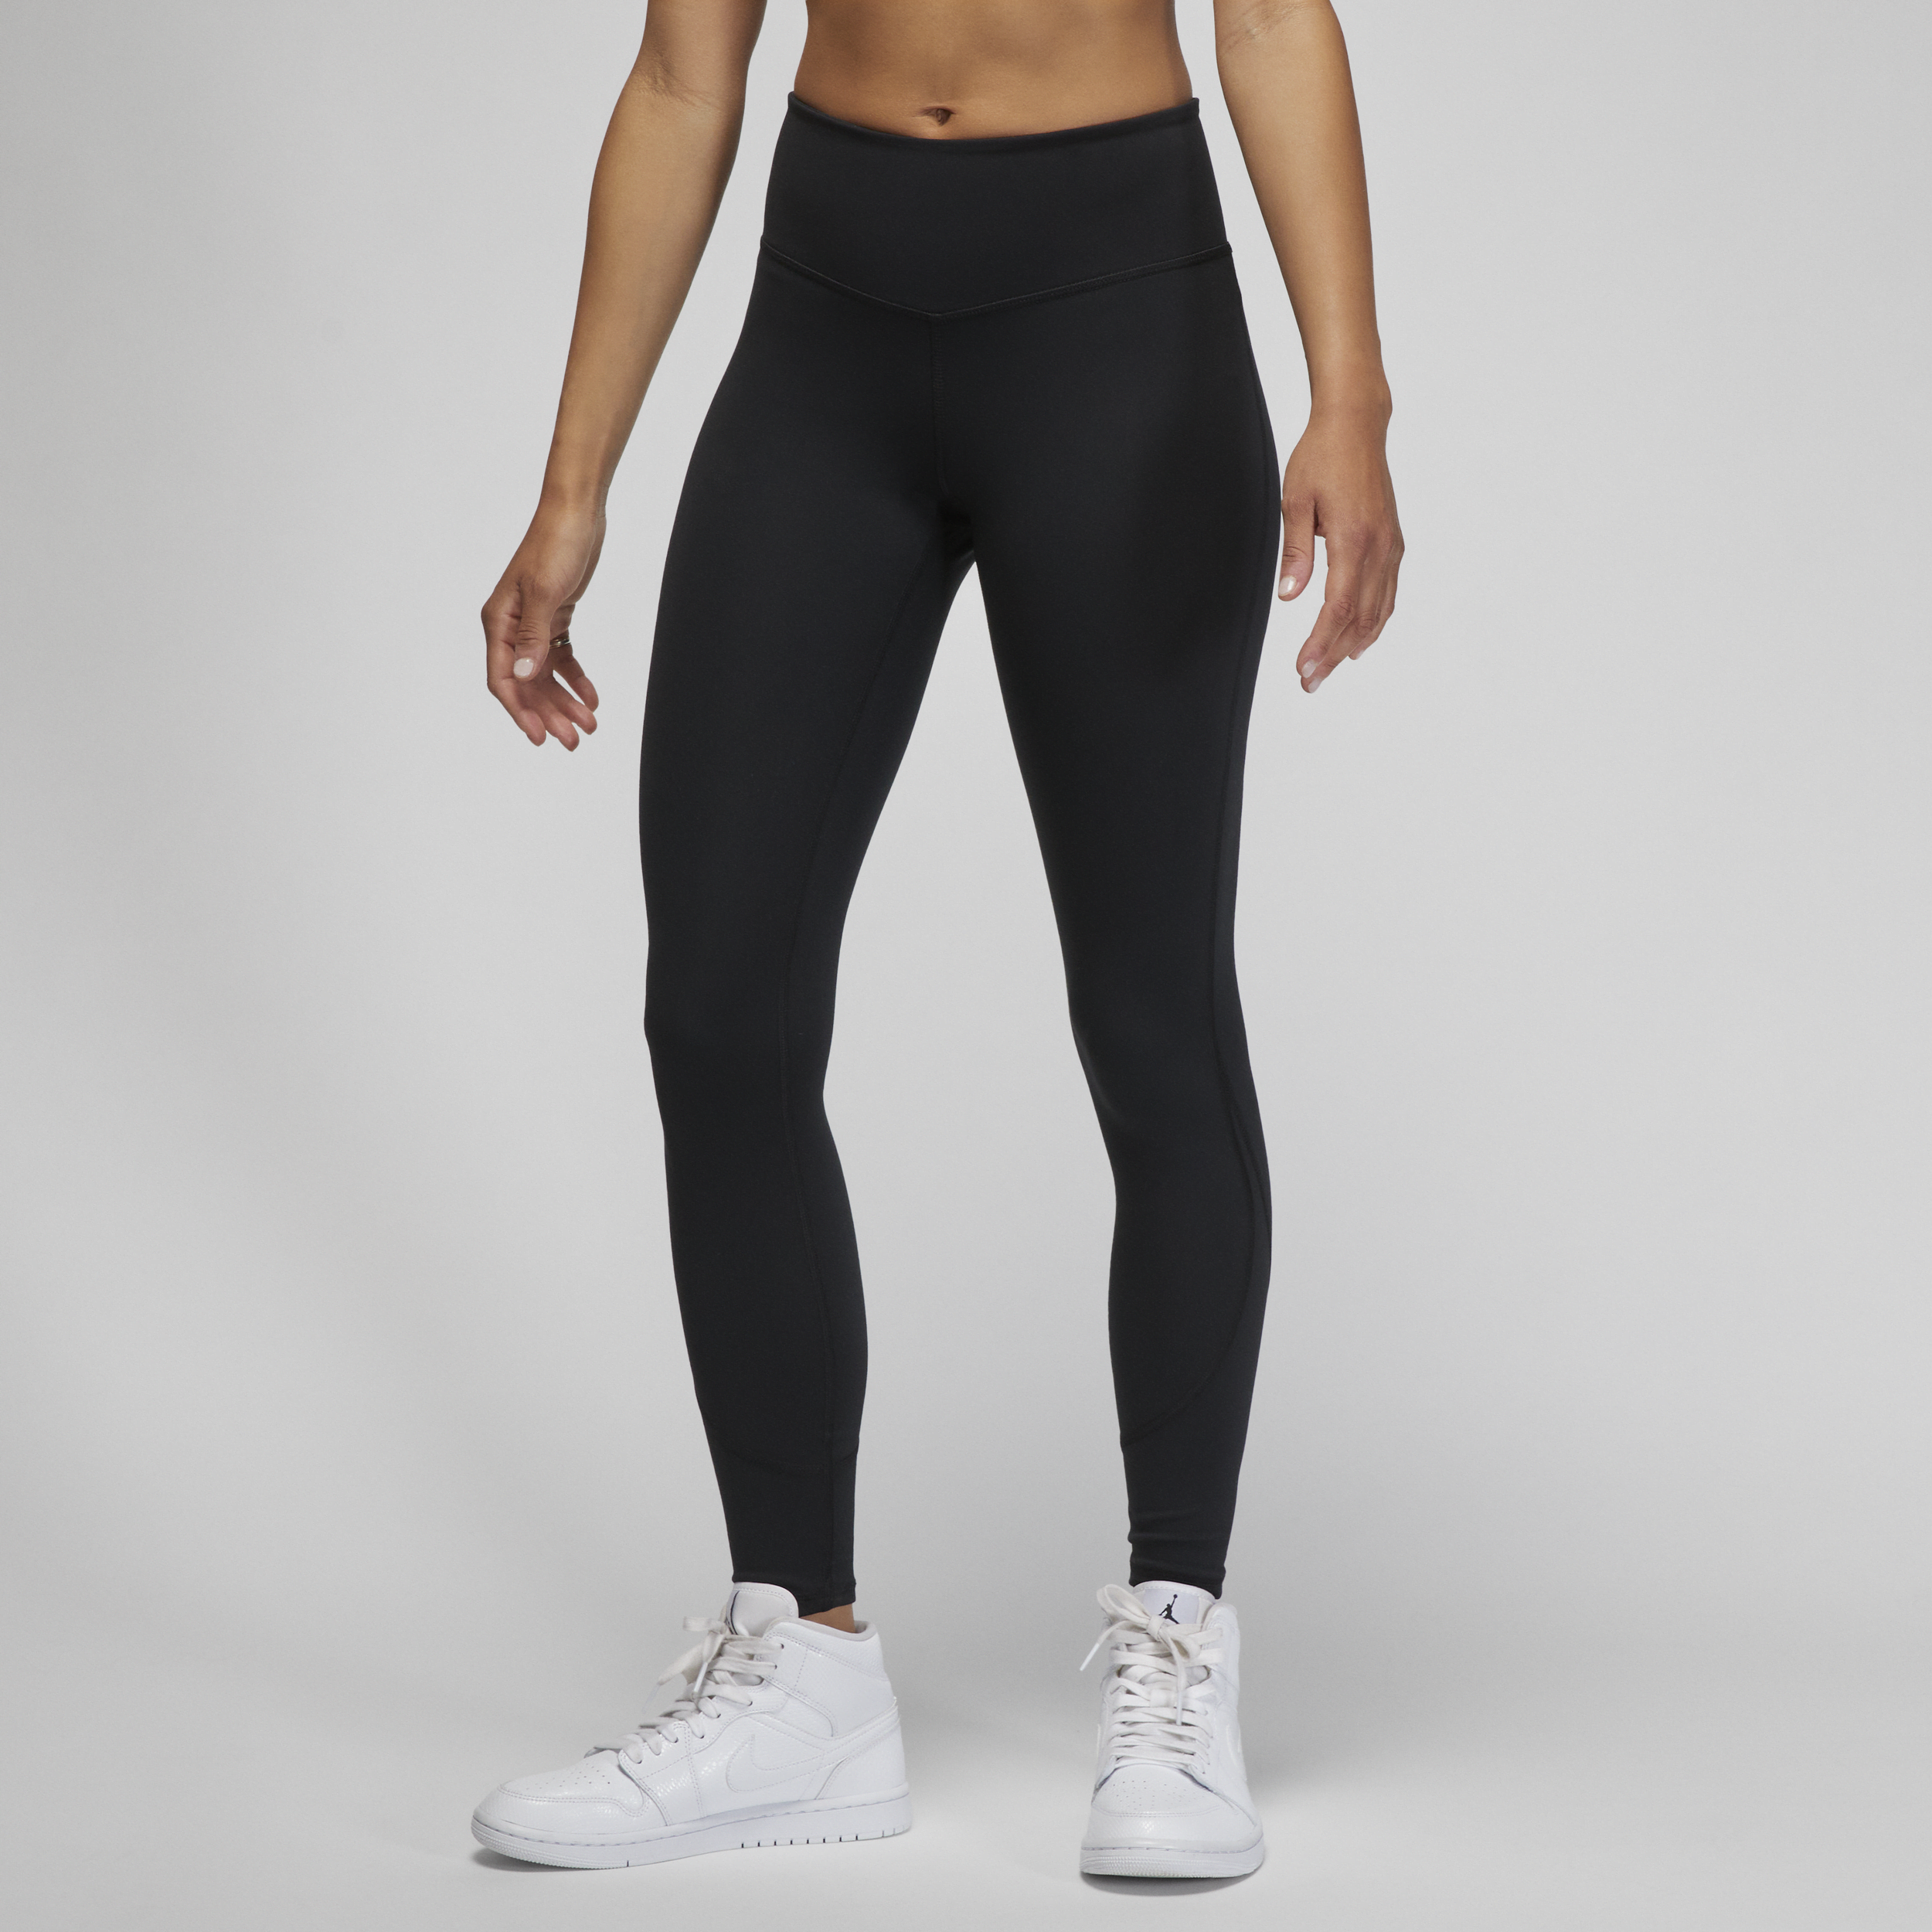 Jordan Sport Leggings - Mujer - Negro